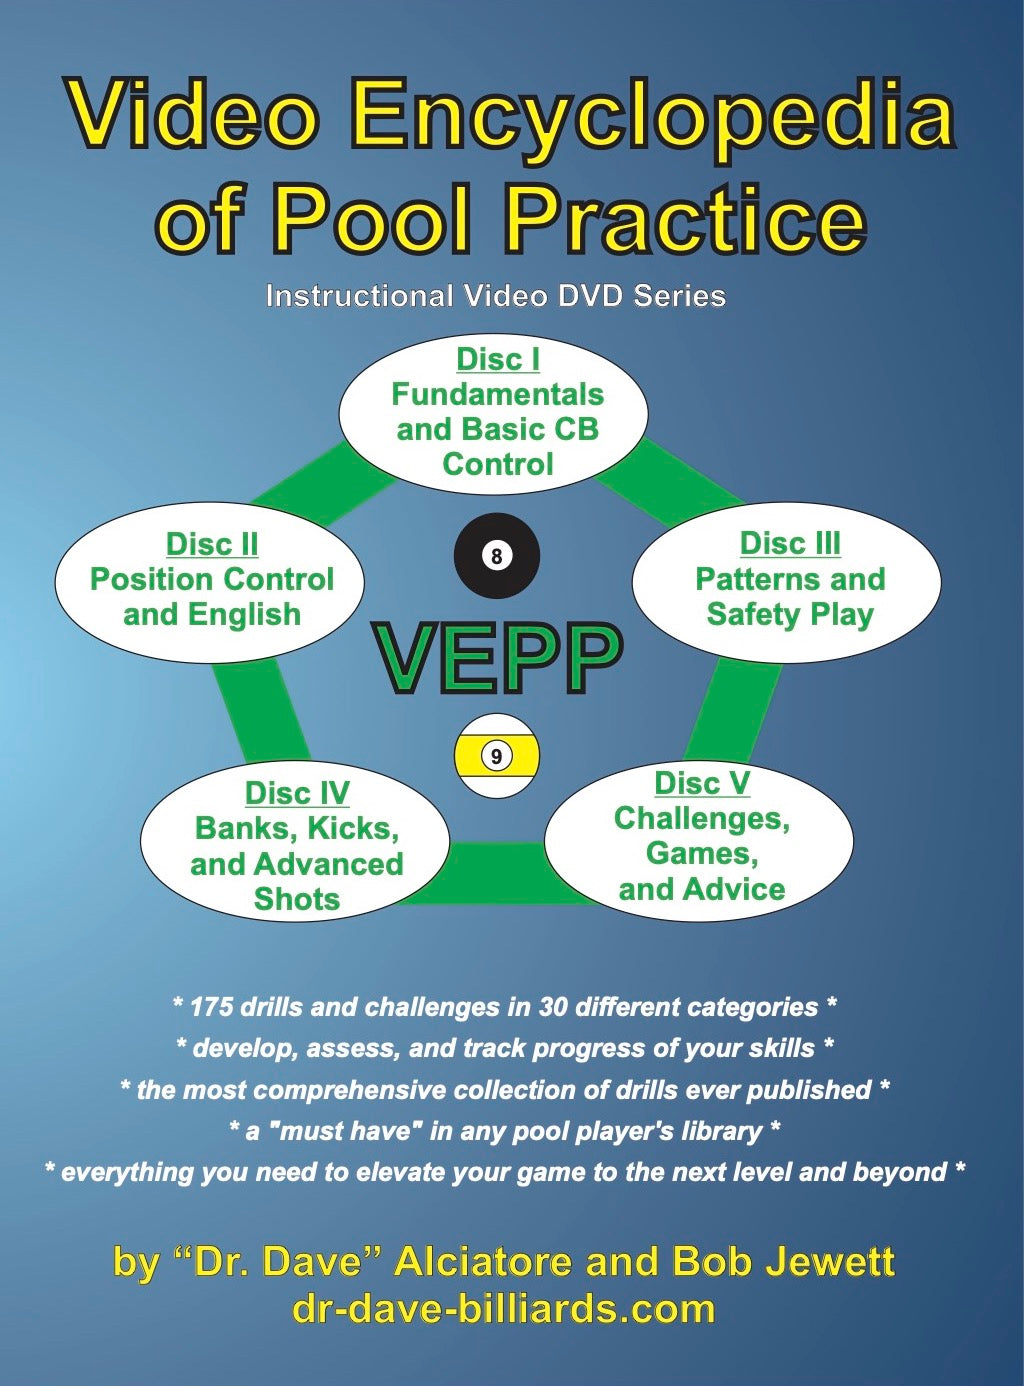 Video Encyclopedia of Pool Practice (VEPP) DVD Series